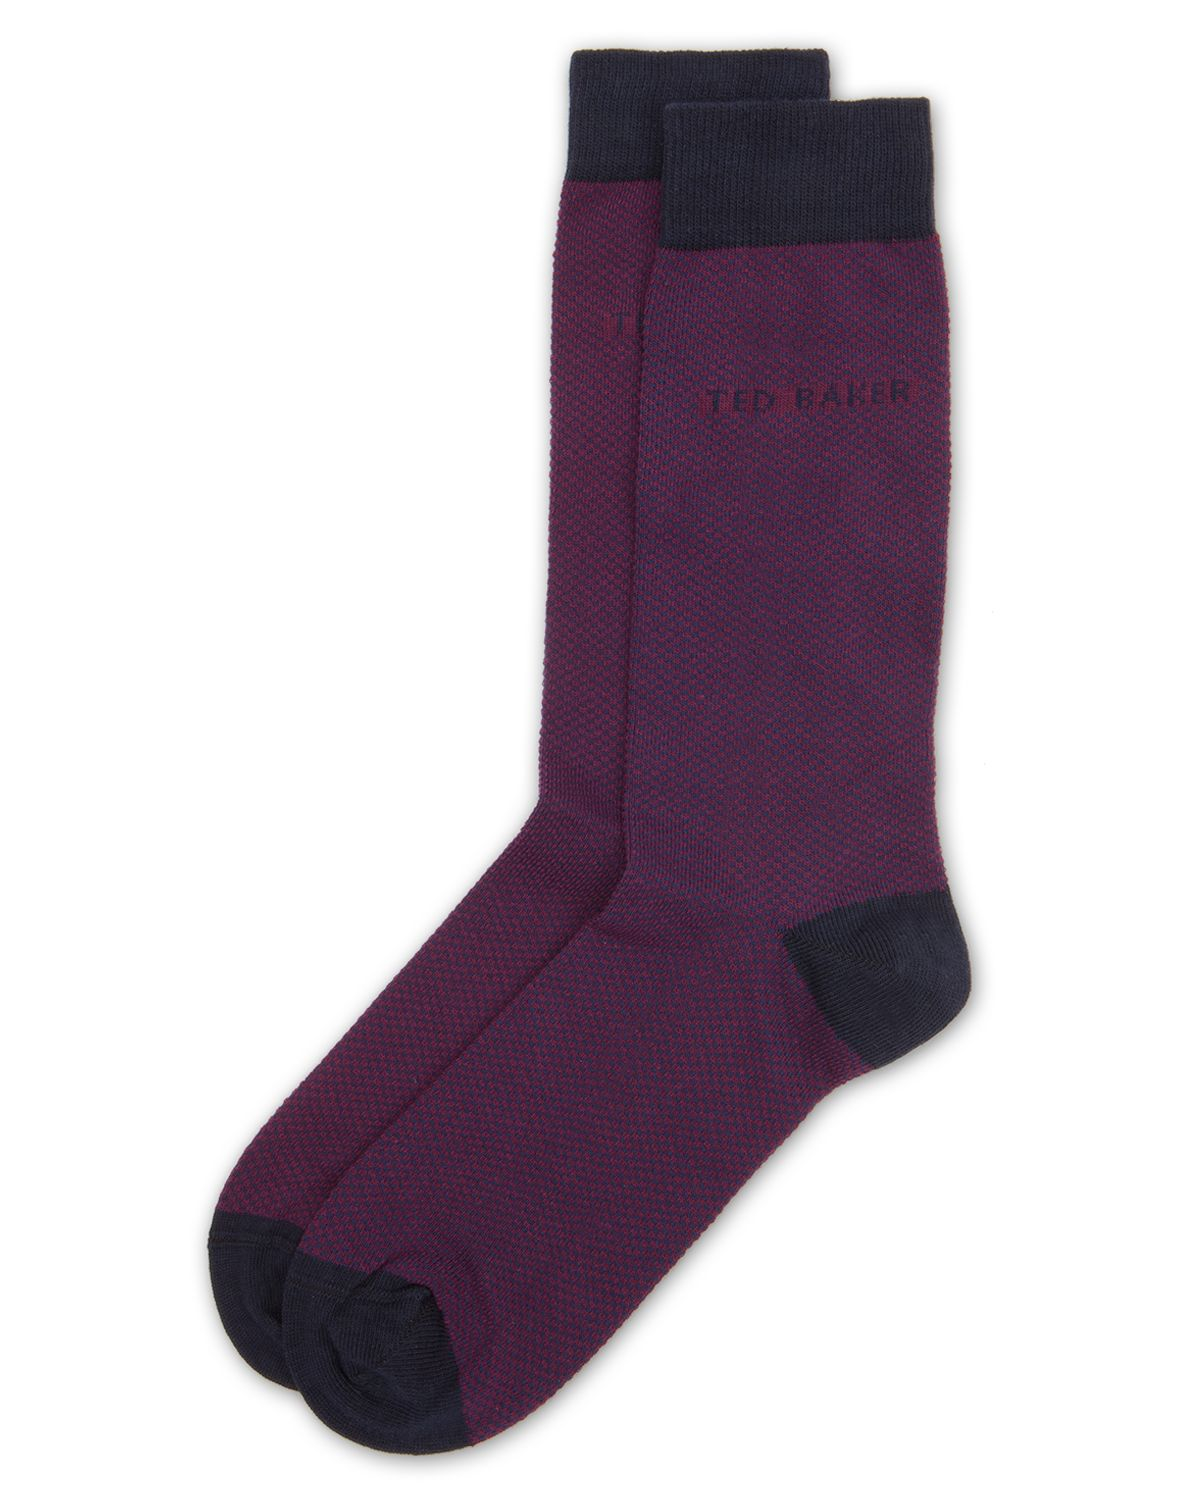 Lyst - Ted Baker Soflite Textured Socks in Purple for Men